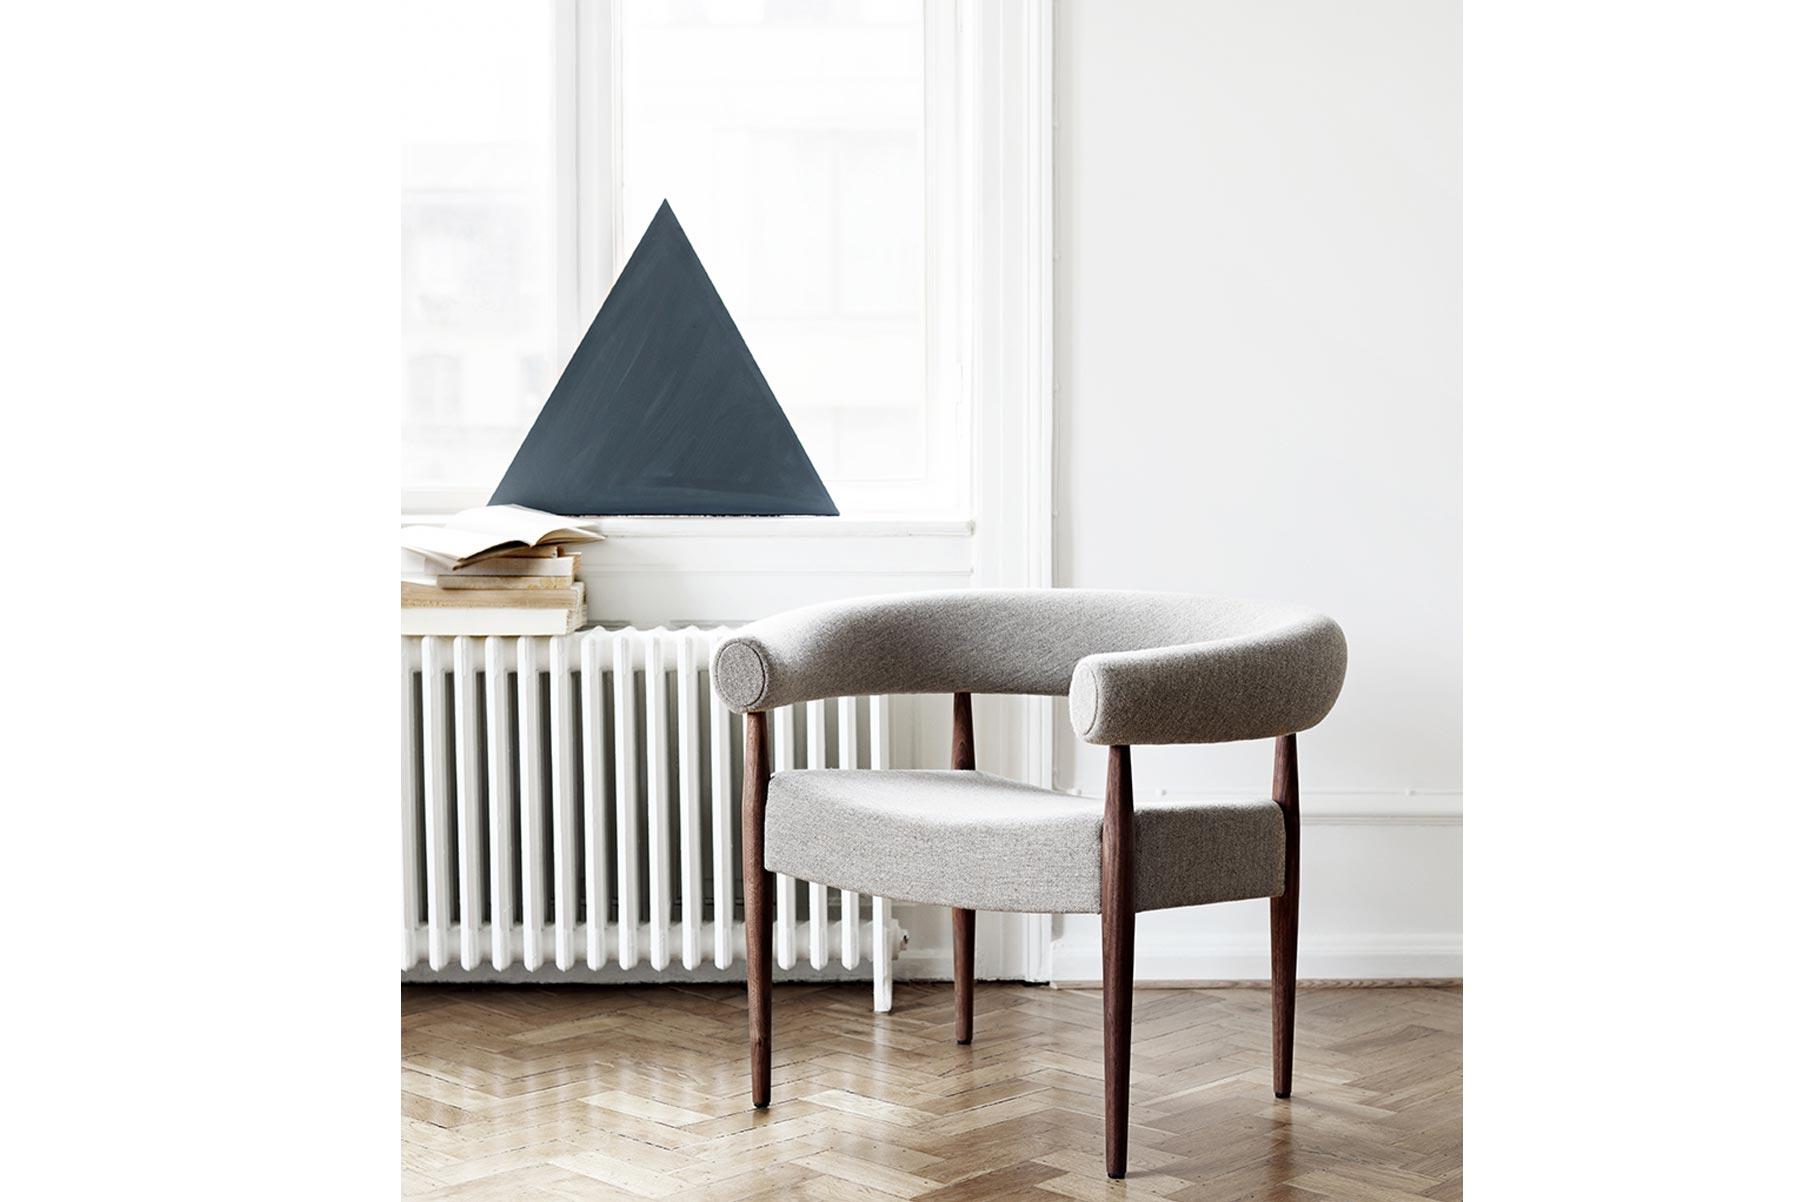 Der Ring-Stuhl wurde 1958 von Nanna und Jørgen Ditzel entworfen und ist einer der elegantesten und ikonischsten Entwürfe des Paares. Der Stuhl wird in der GETAMA-Fabrik im dänischen Gedsted von erfahrenen Schreinern nach traditionellen